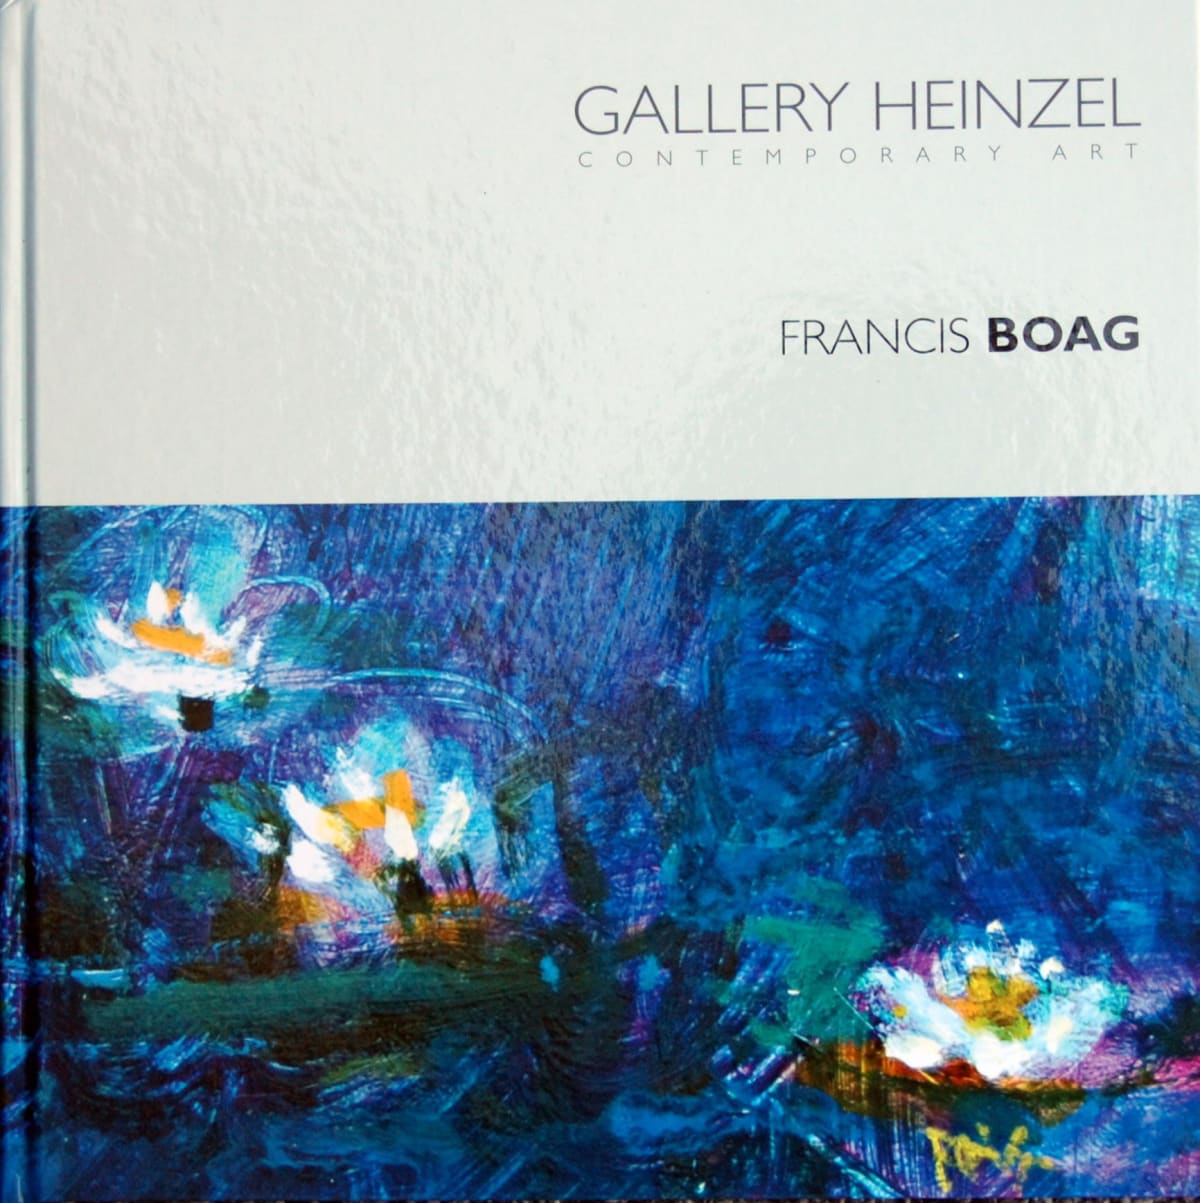 Gallery Heinzel presents FRANCIS BOAG